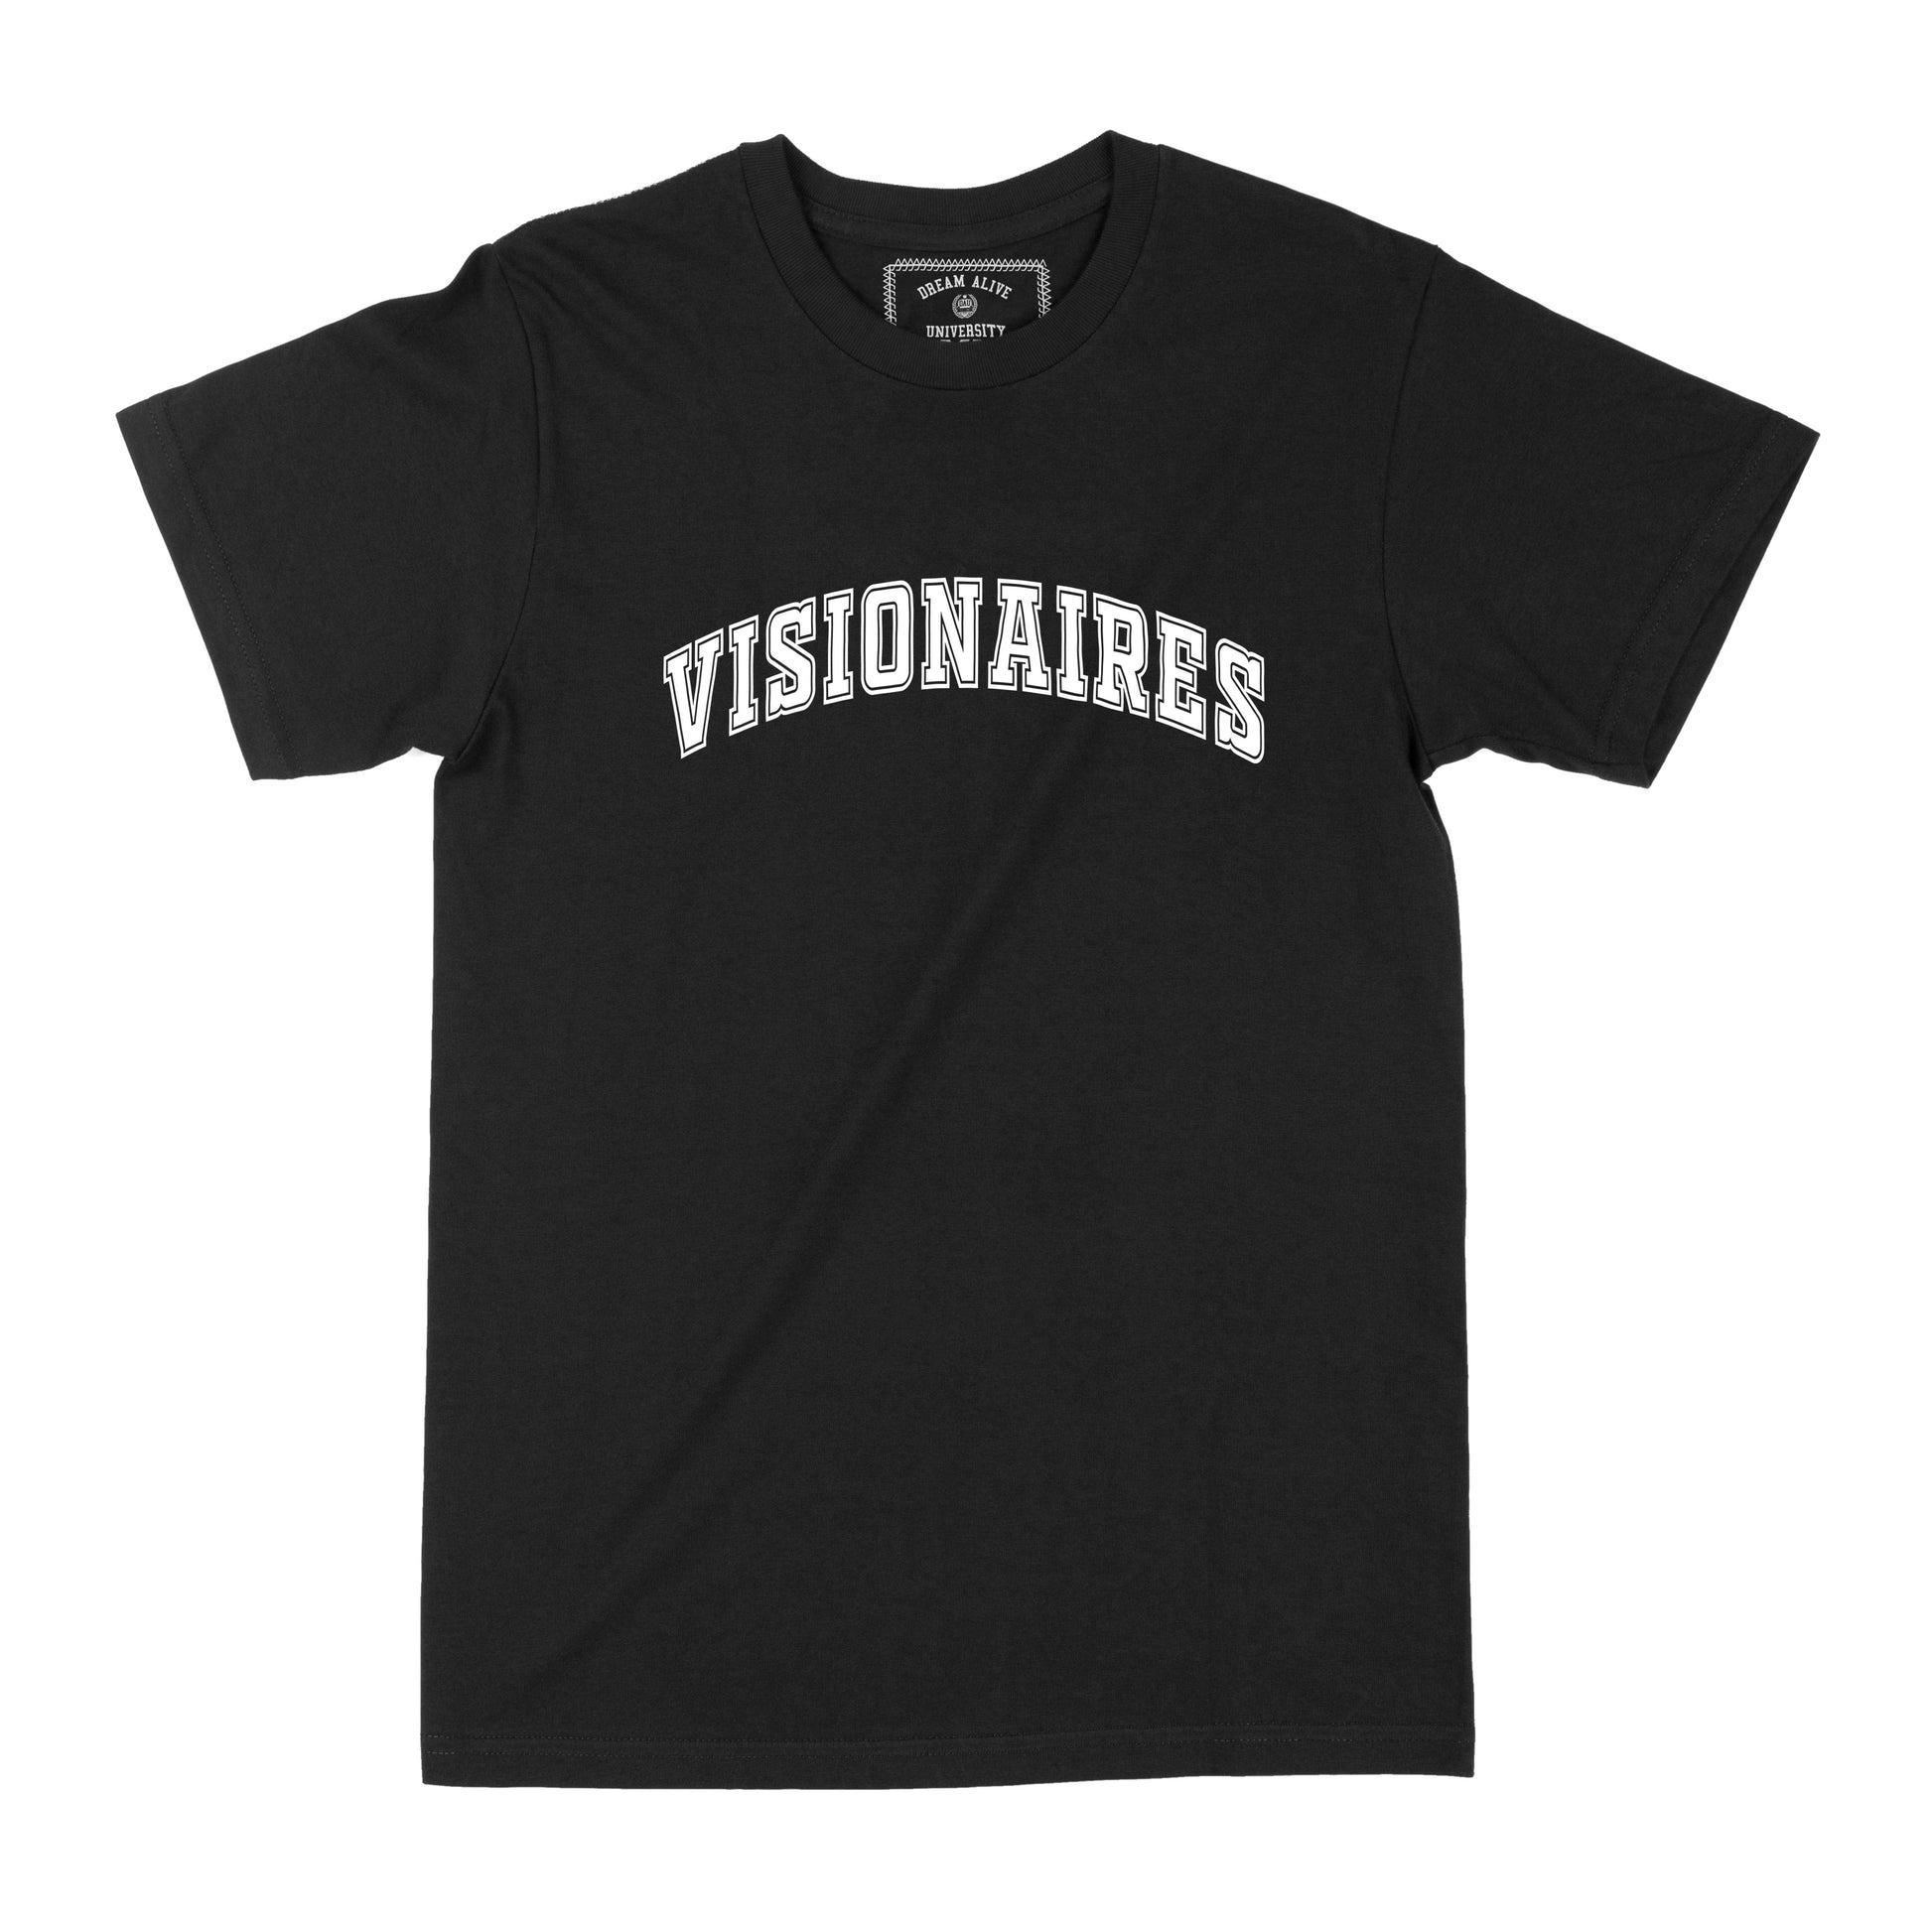 Varsity Visionaires T-shirt (Black)